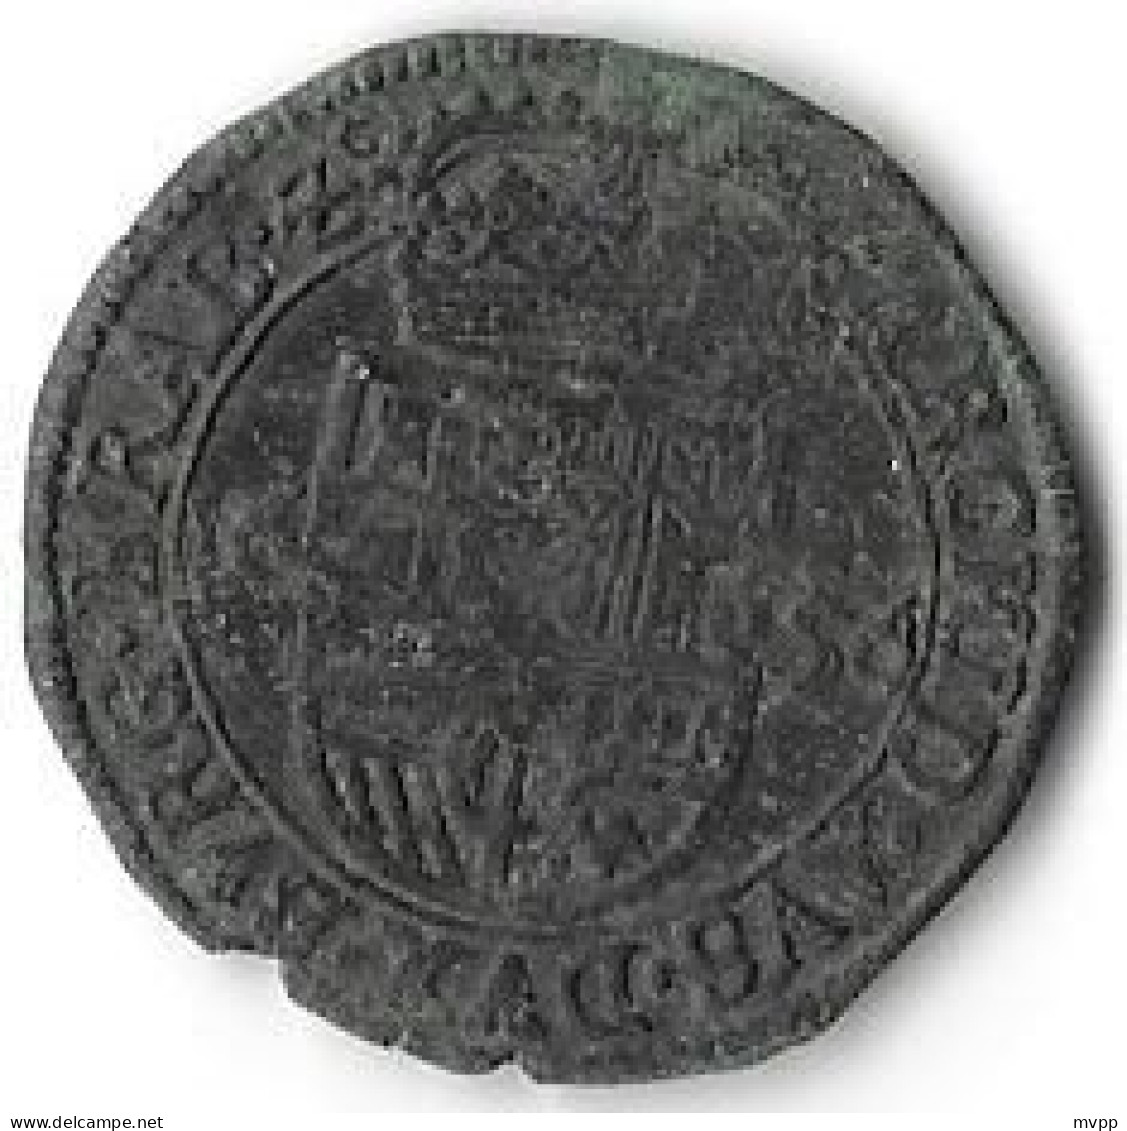 Philippus IV  Brabant -  1 Liard (oord) - 1656 (Antwerp) - Cu - KM # 63.1 - VVF - Spaanse Nederlanden